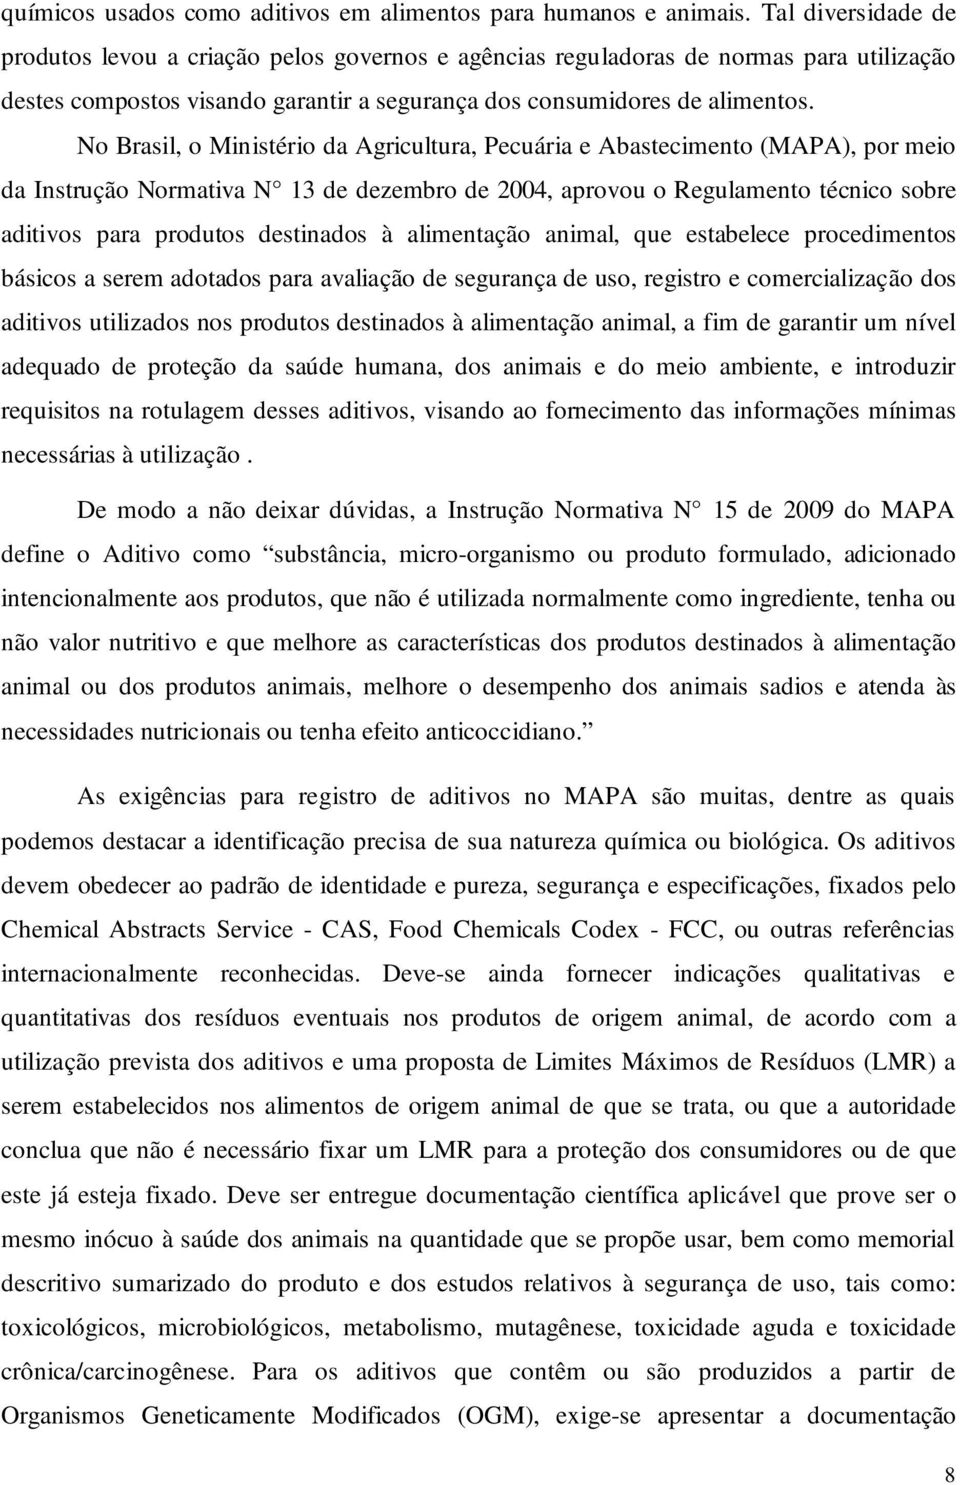 No Brasil, o Ministério da Agricultura, Pecuária e Abastecimento (MAPA), por meio da Instrução Normativa N 13 de dezembro de 2004, aprovou o Regulamento técnico sobre aditivos para produtos